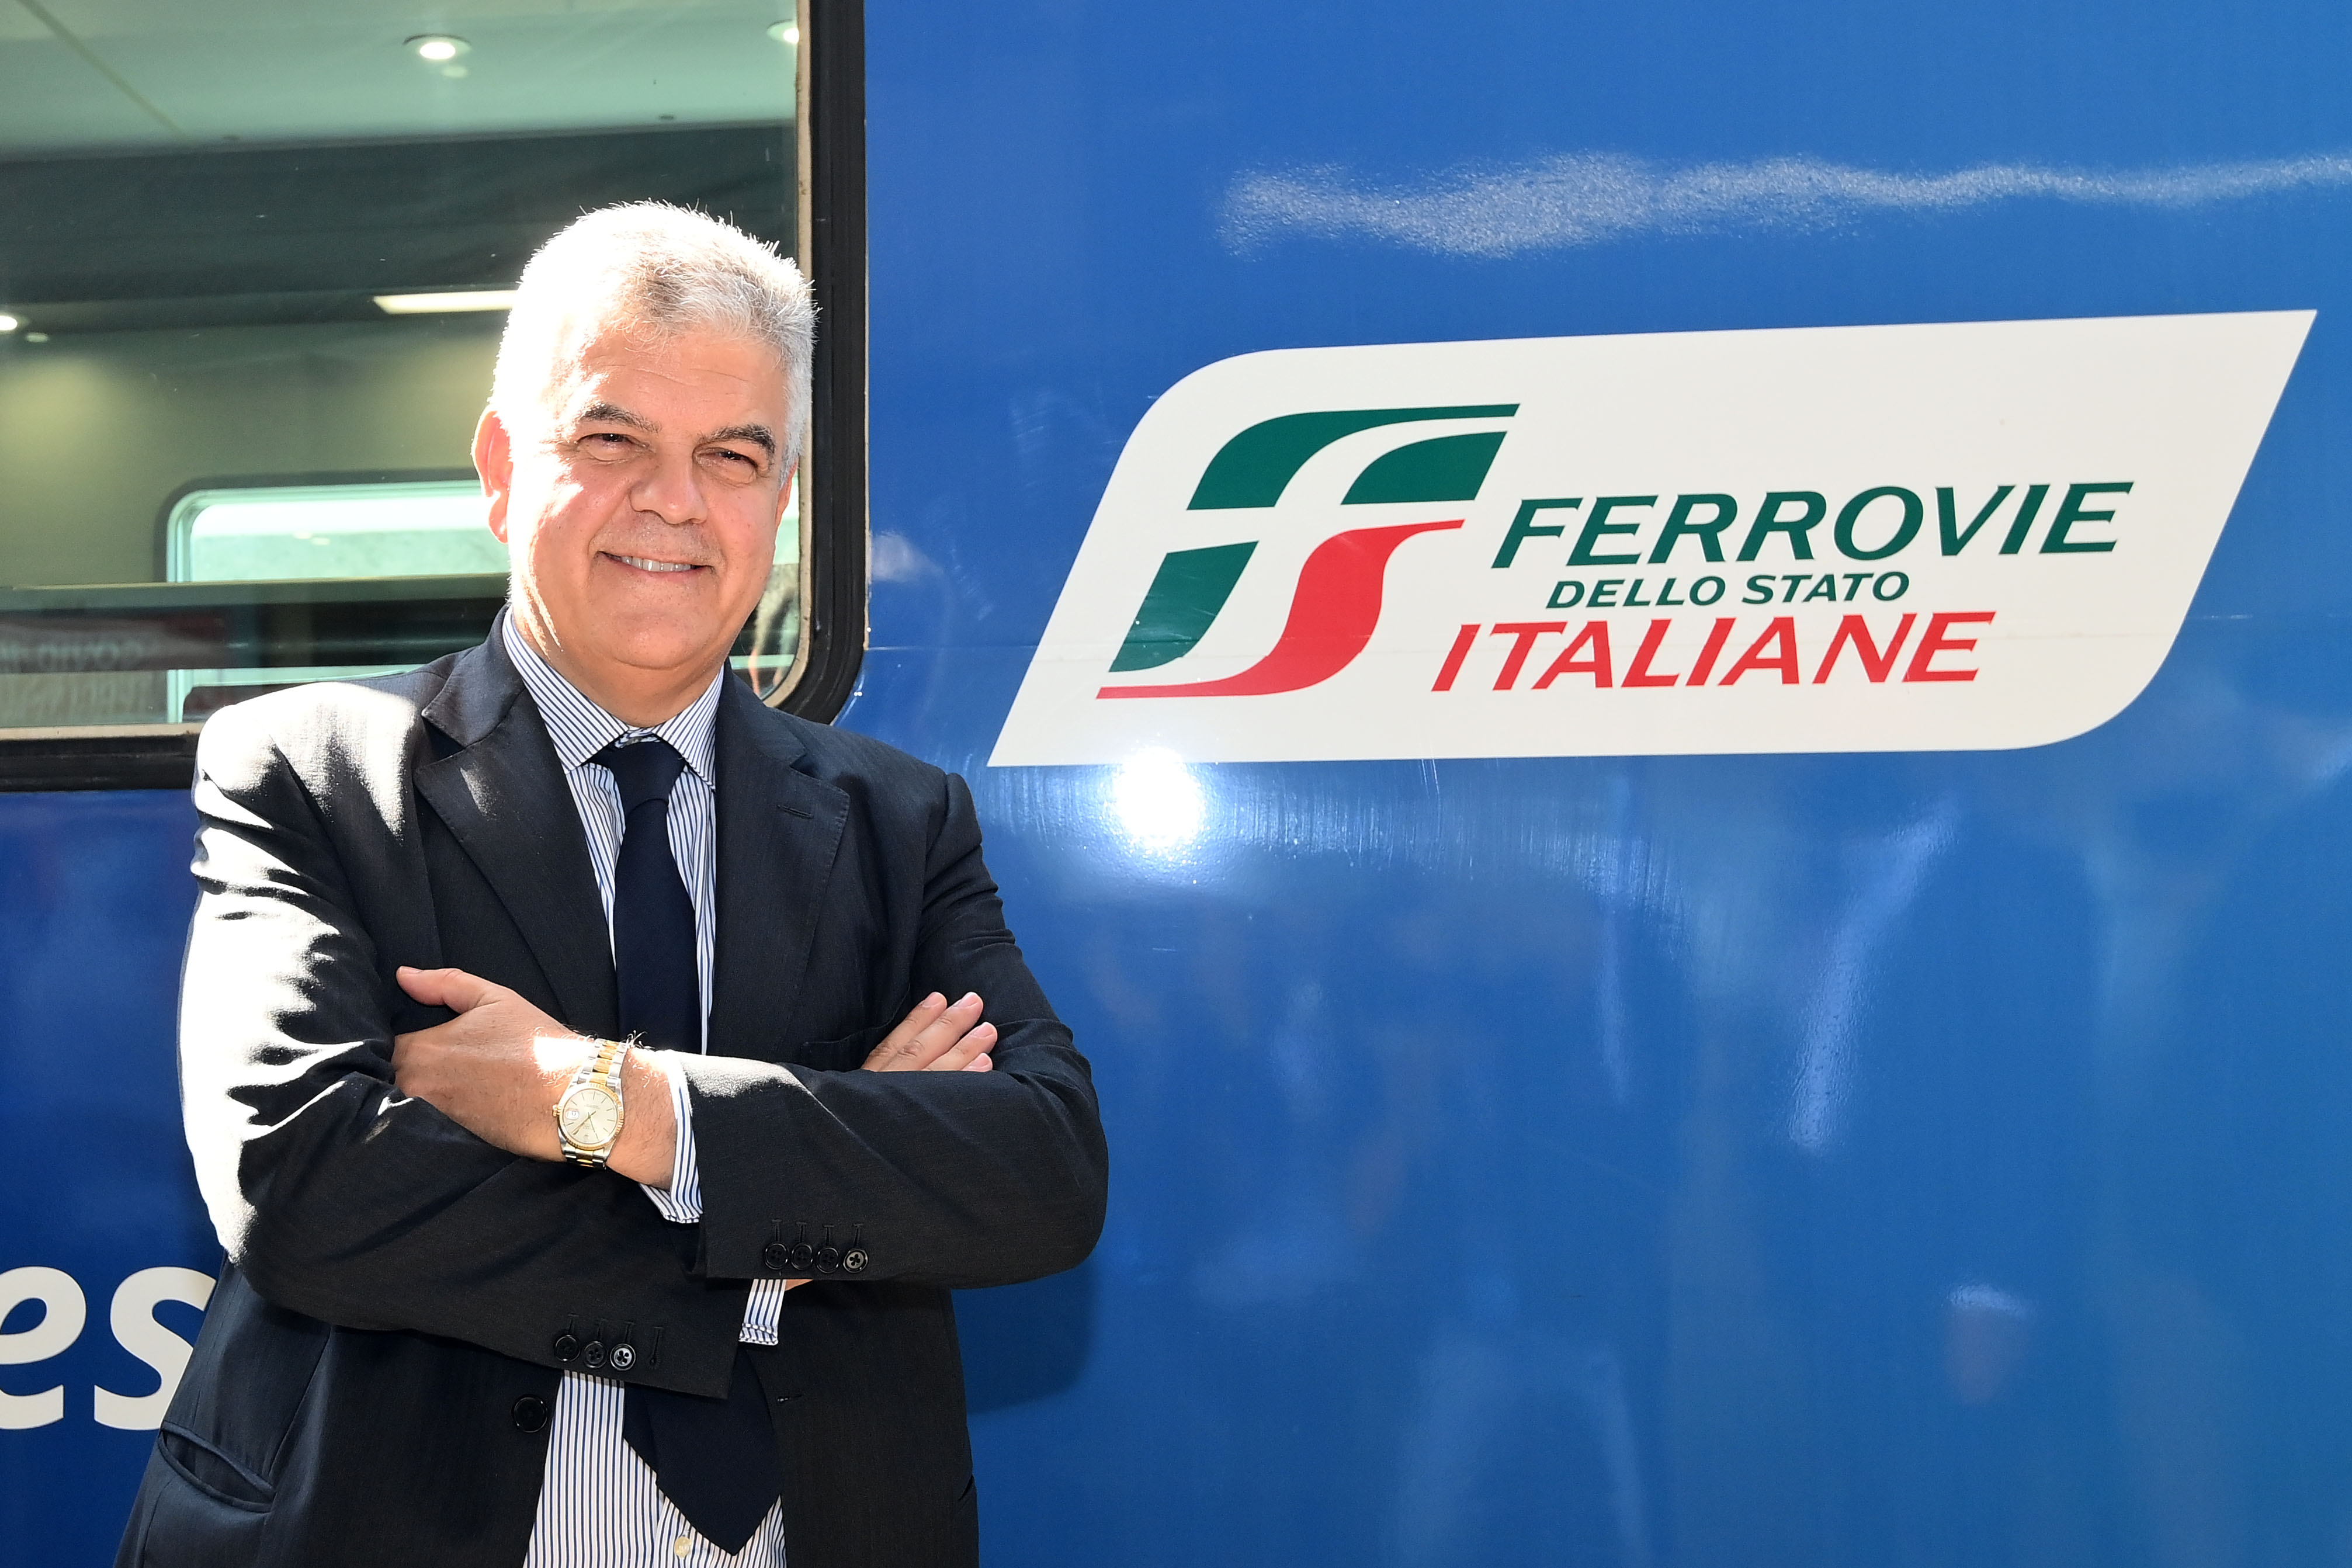 Aumento della capacità e autoproduzione di energia, il Piano presentato da Luigi Ferraris per FS Italiane